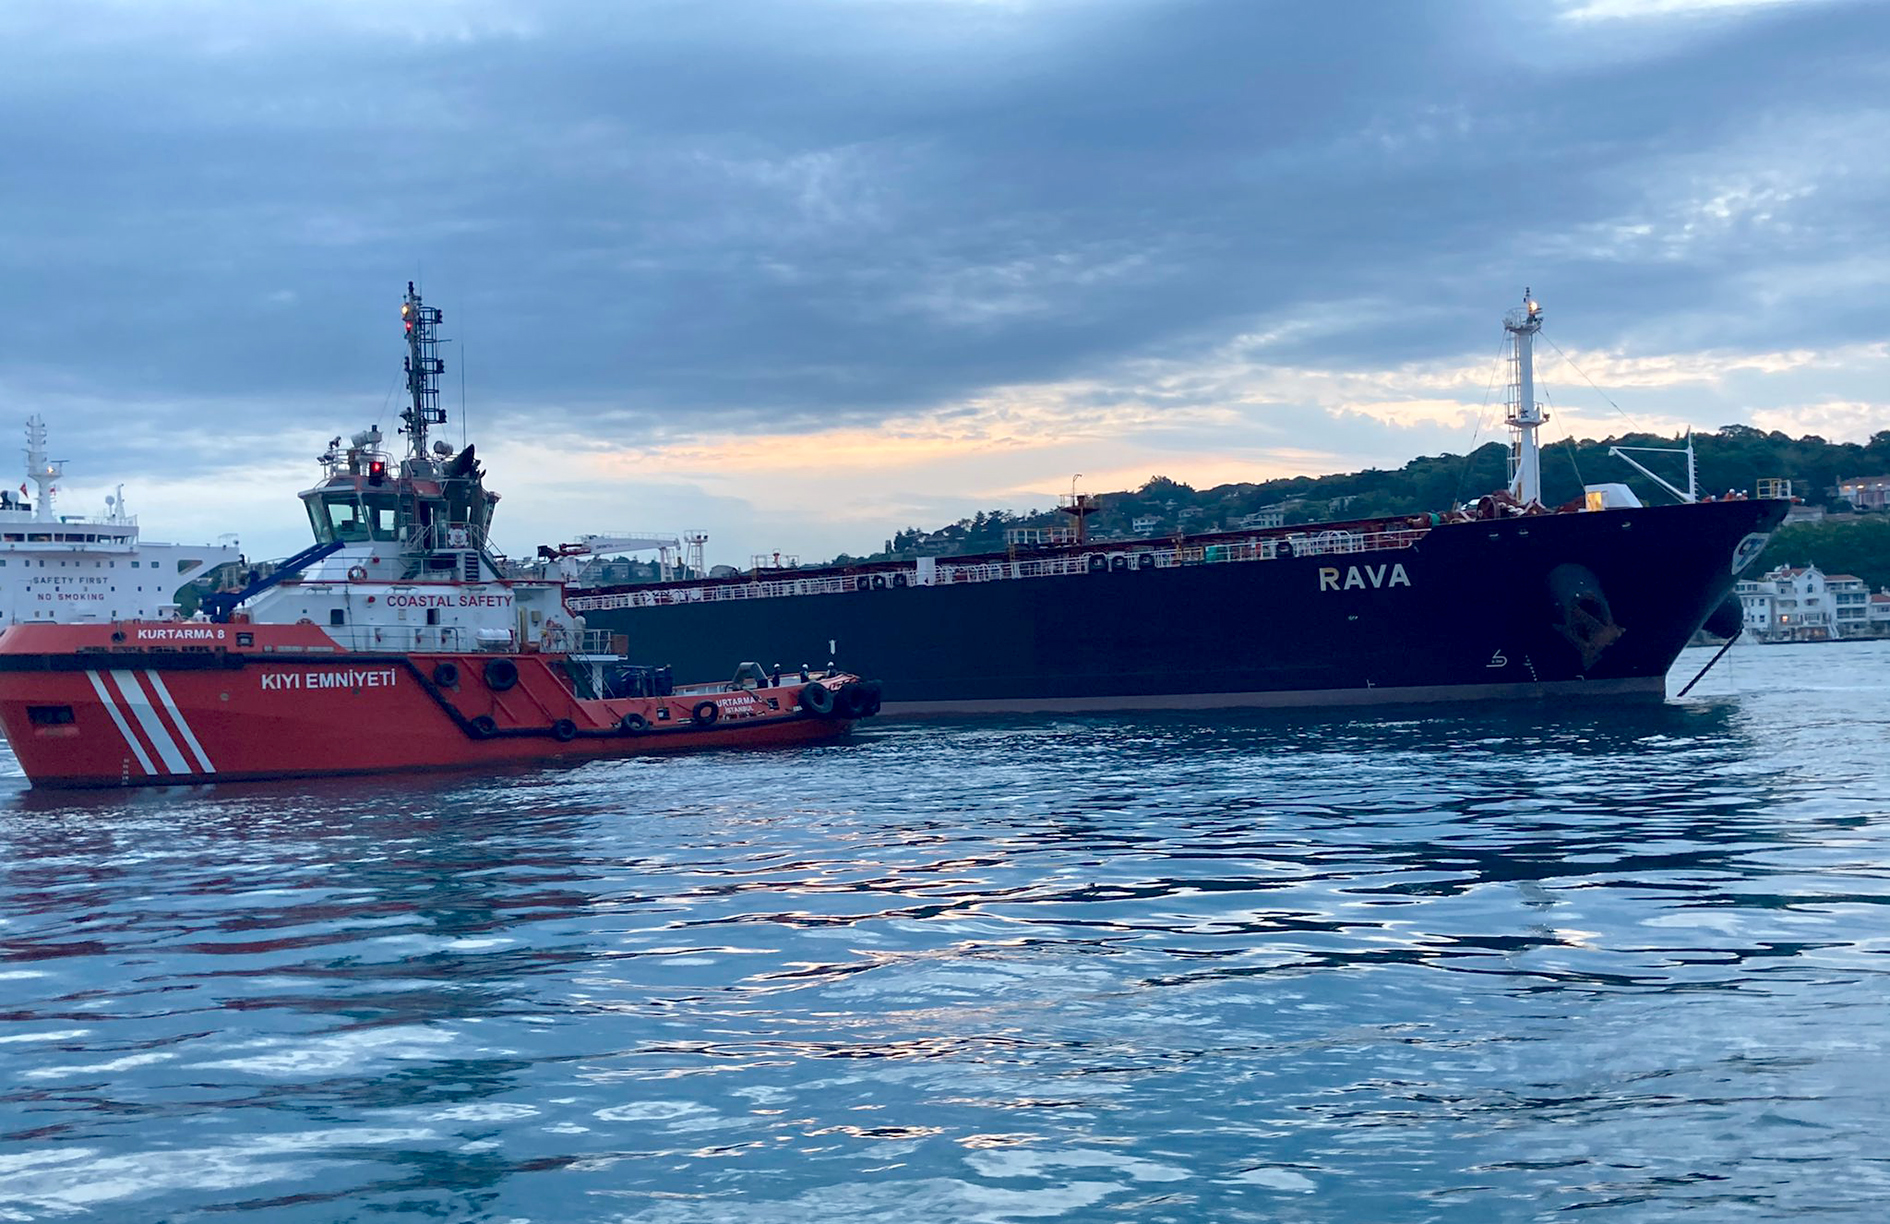 İstanbul Boğazı’nda petrol taşıyan tanker kıyıya 300 metre kala durduruldu, Boğaz gemi trafiğine kapatıldı